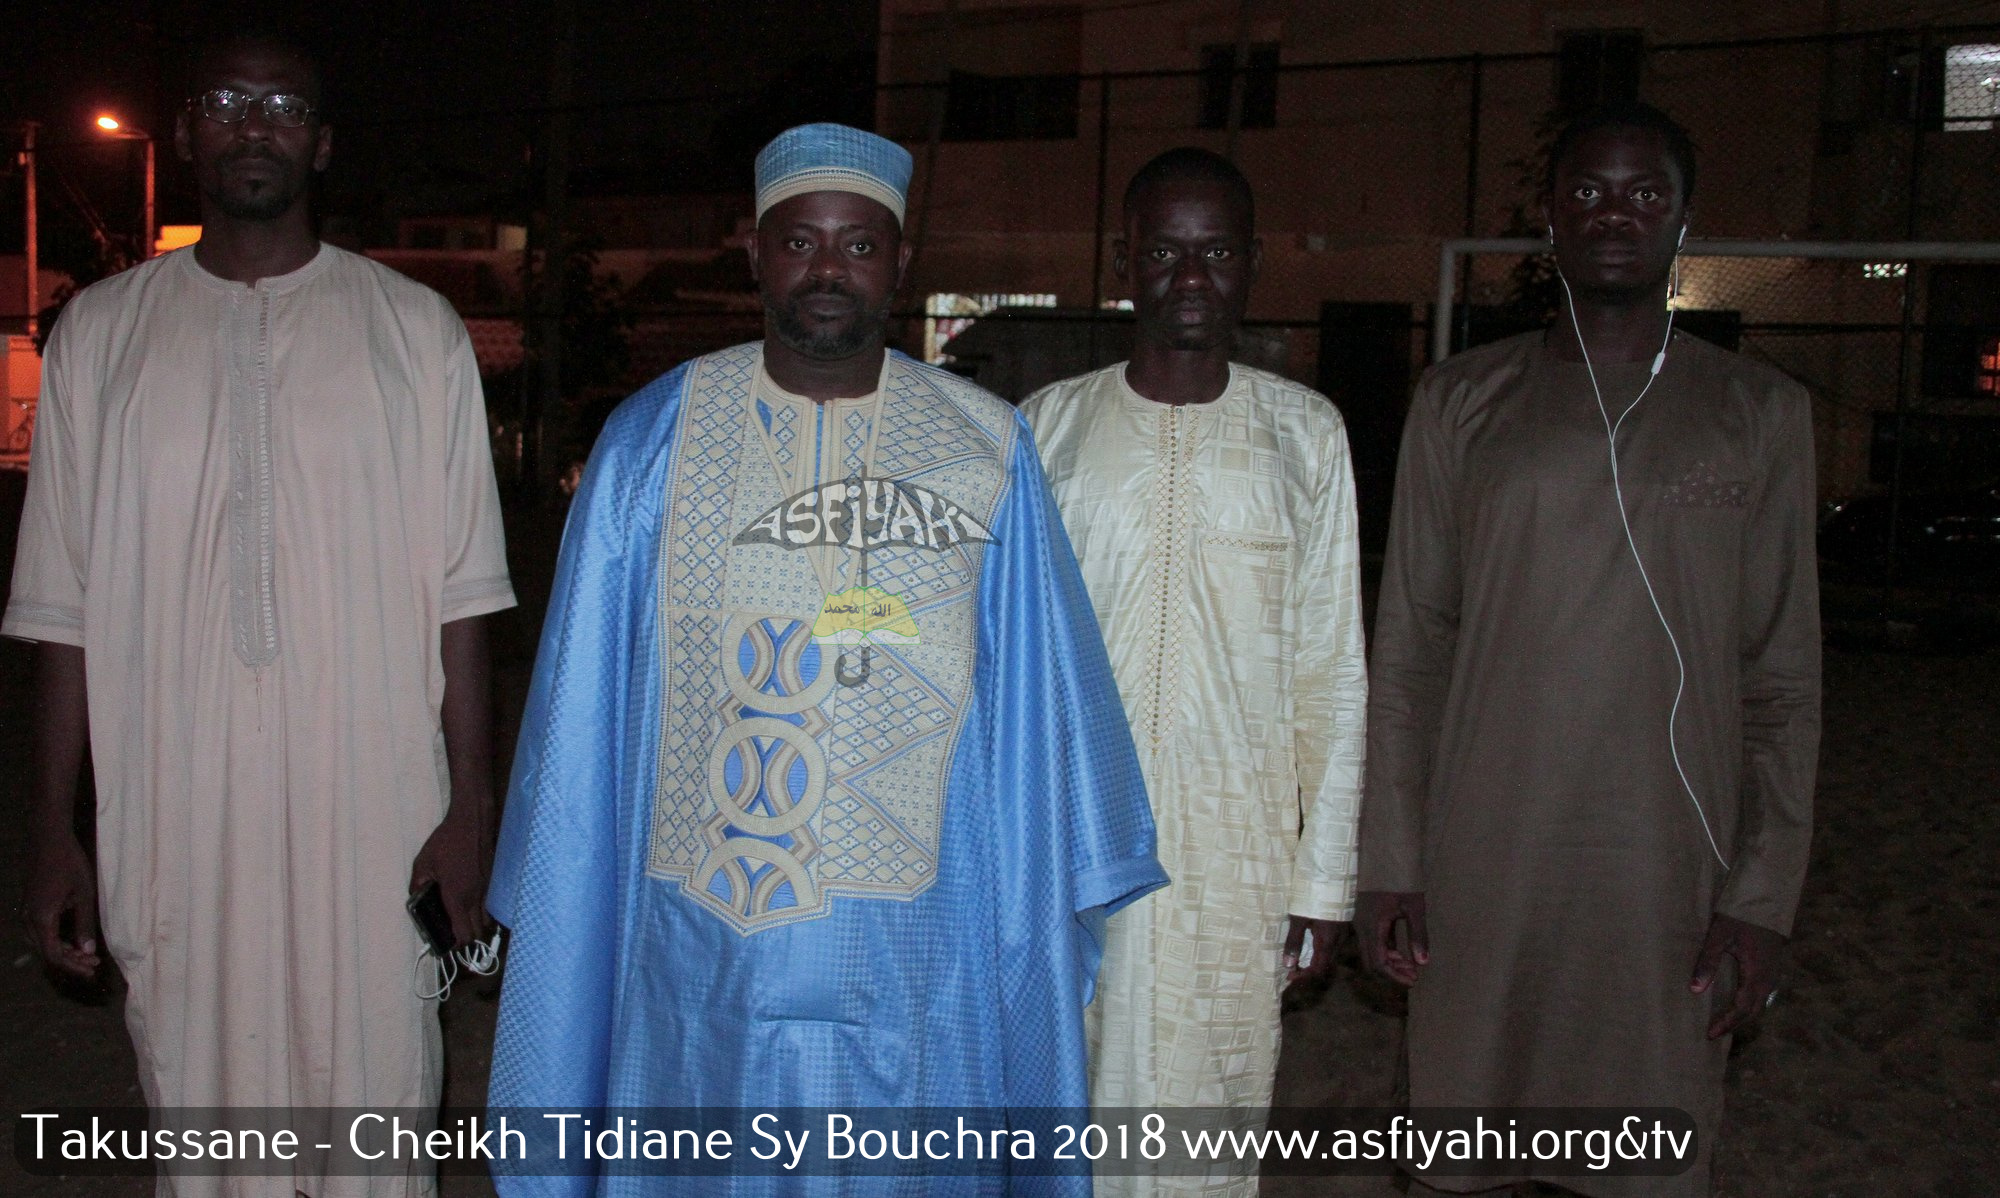 PHOTOS -Les images du Takoussane organisé par Serigne Cheikh Ahmed Tidiane Sy Bouchra